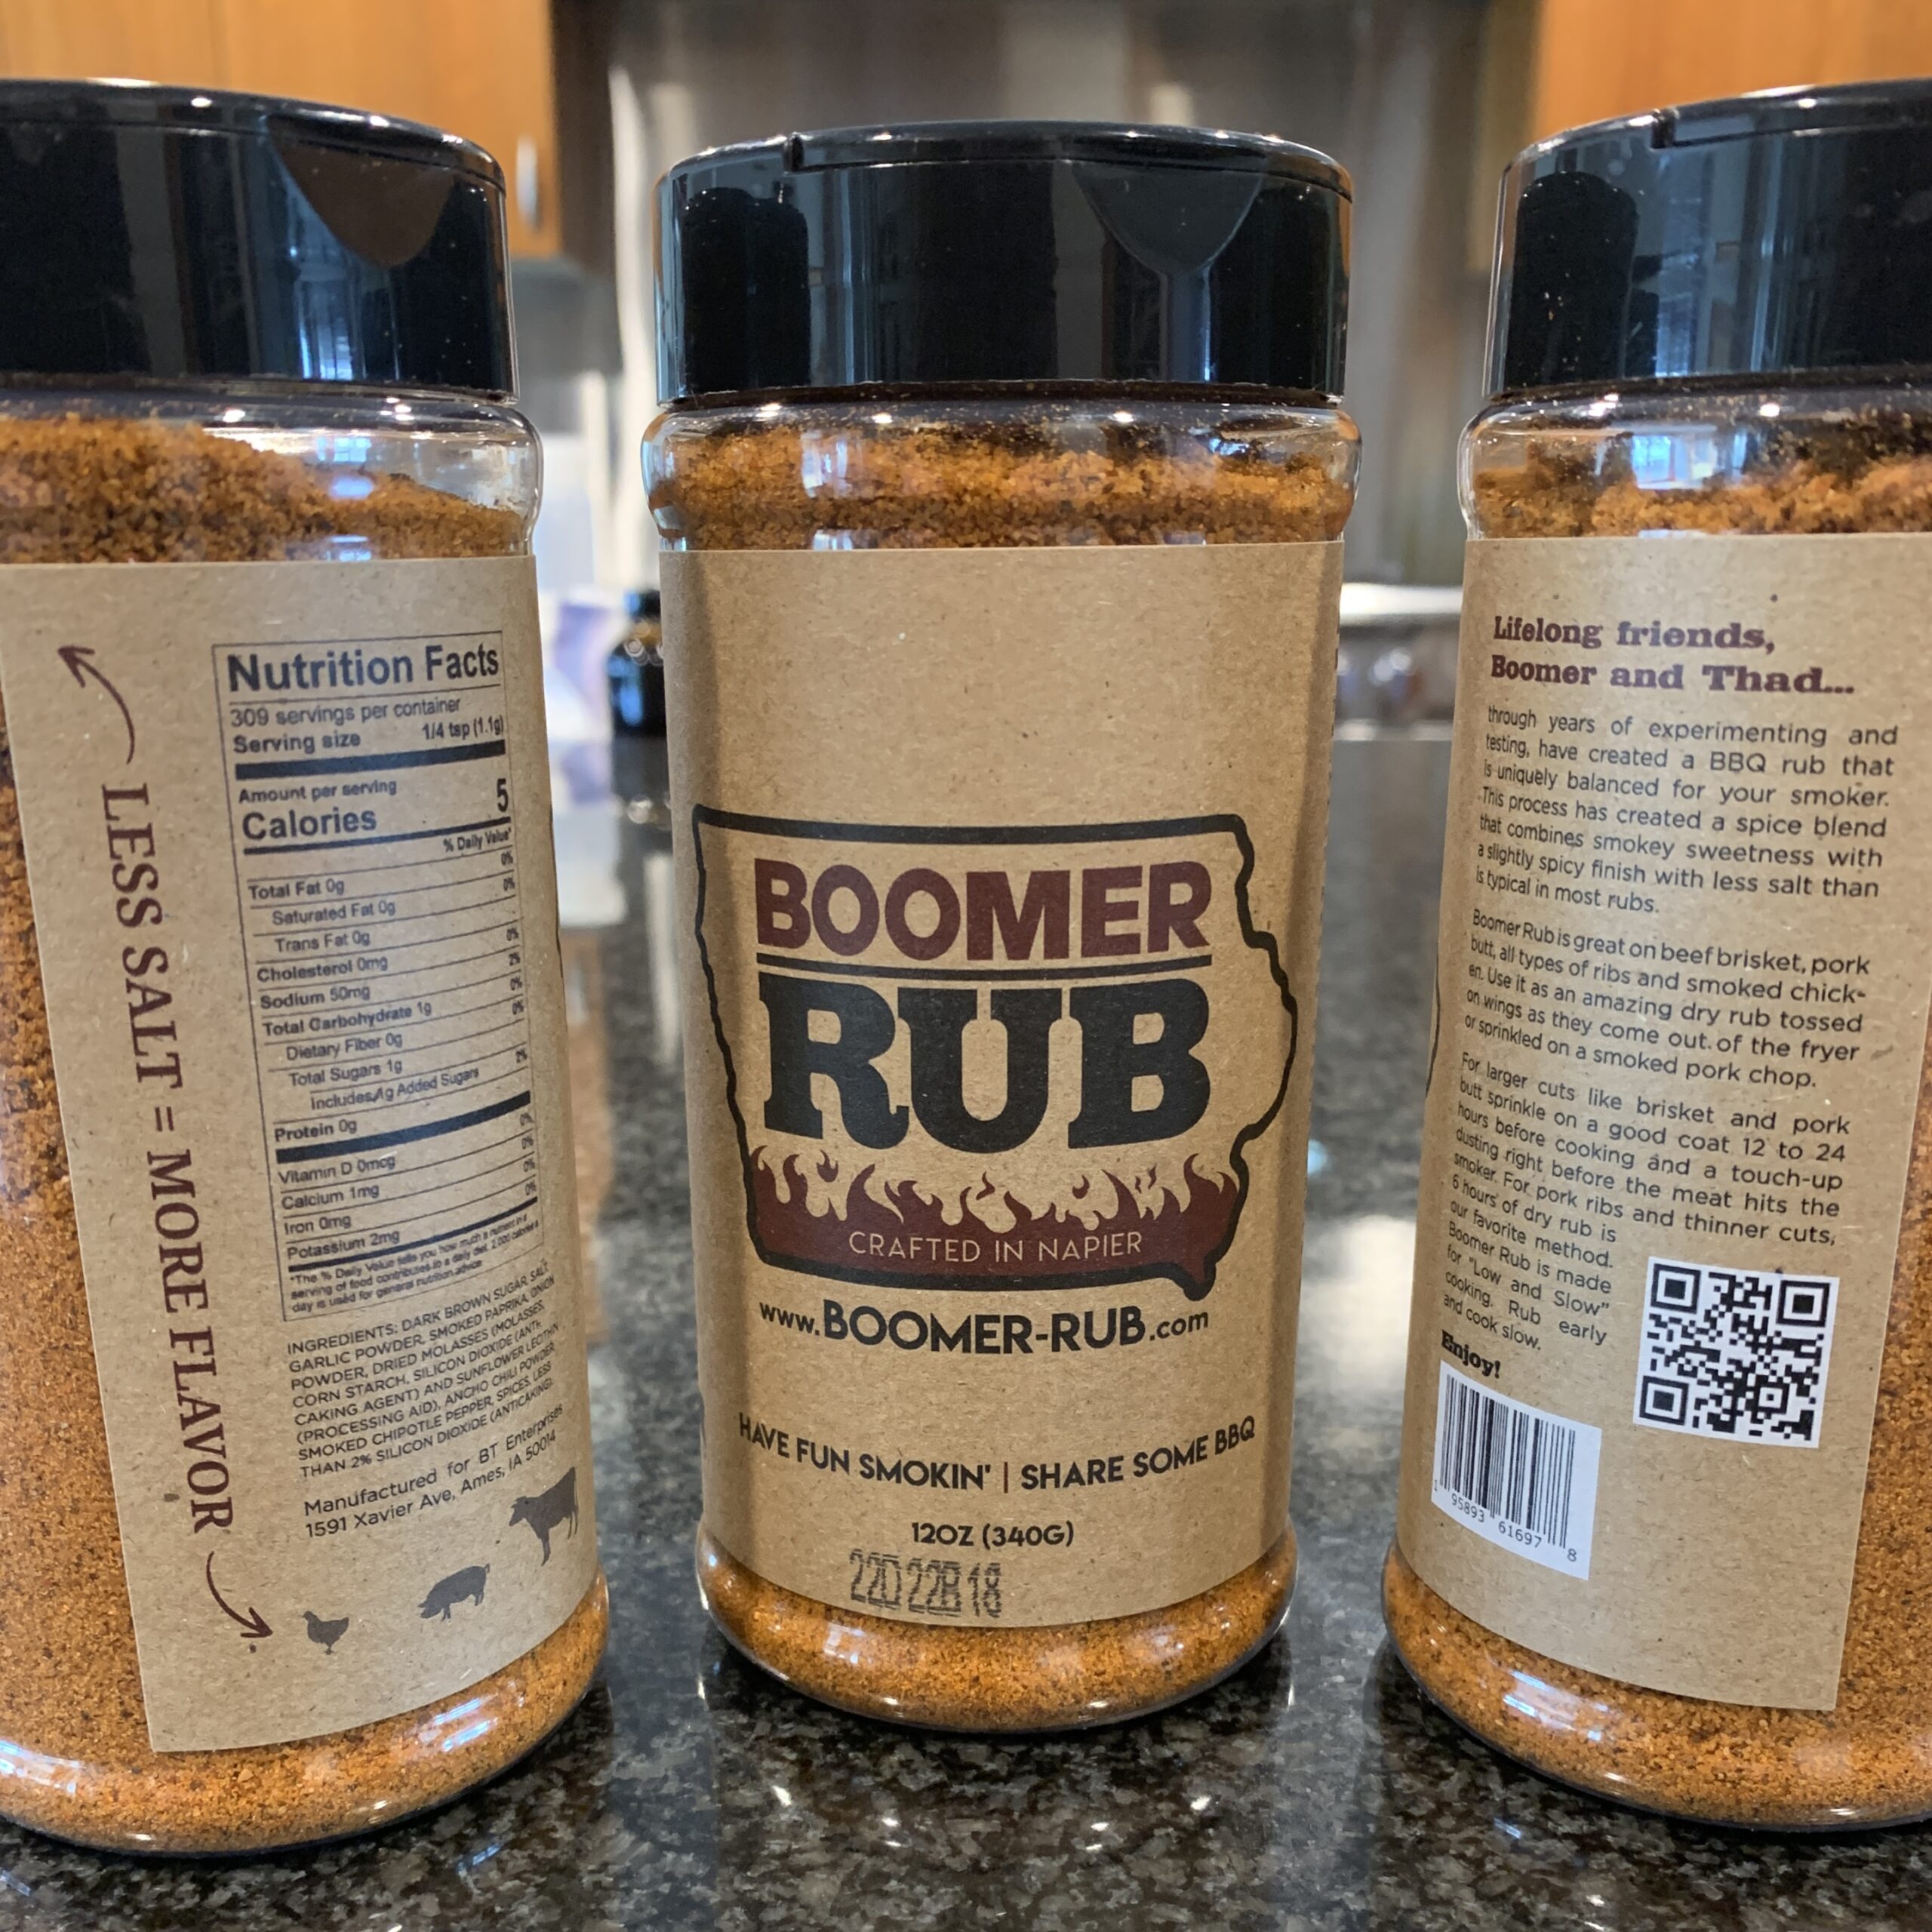 Boomer-Rub 12oz Shaker Bottle